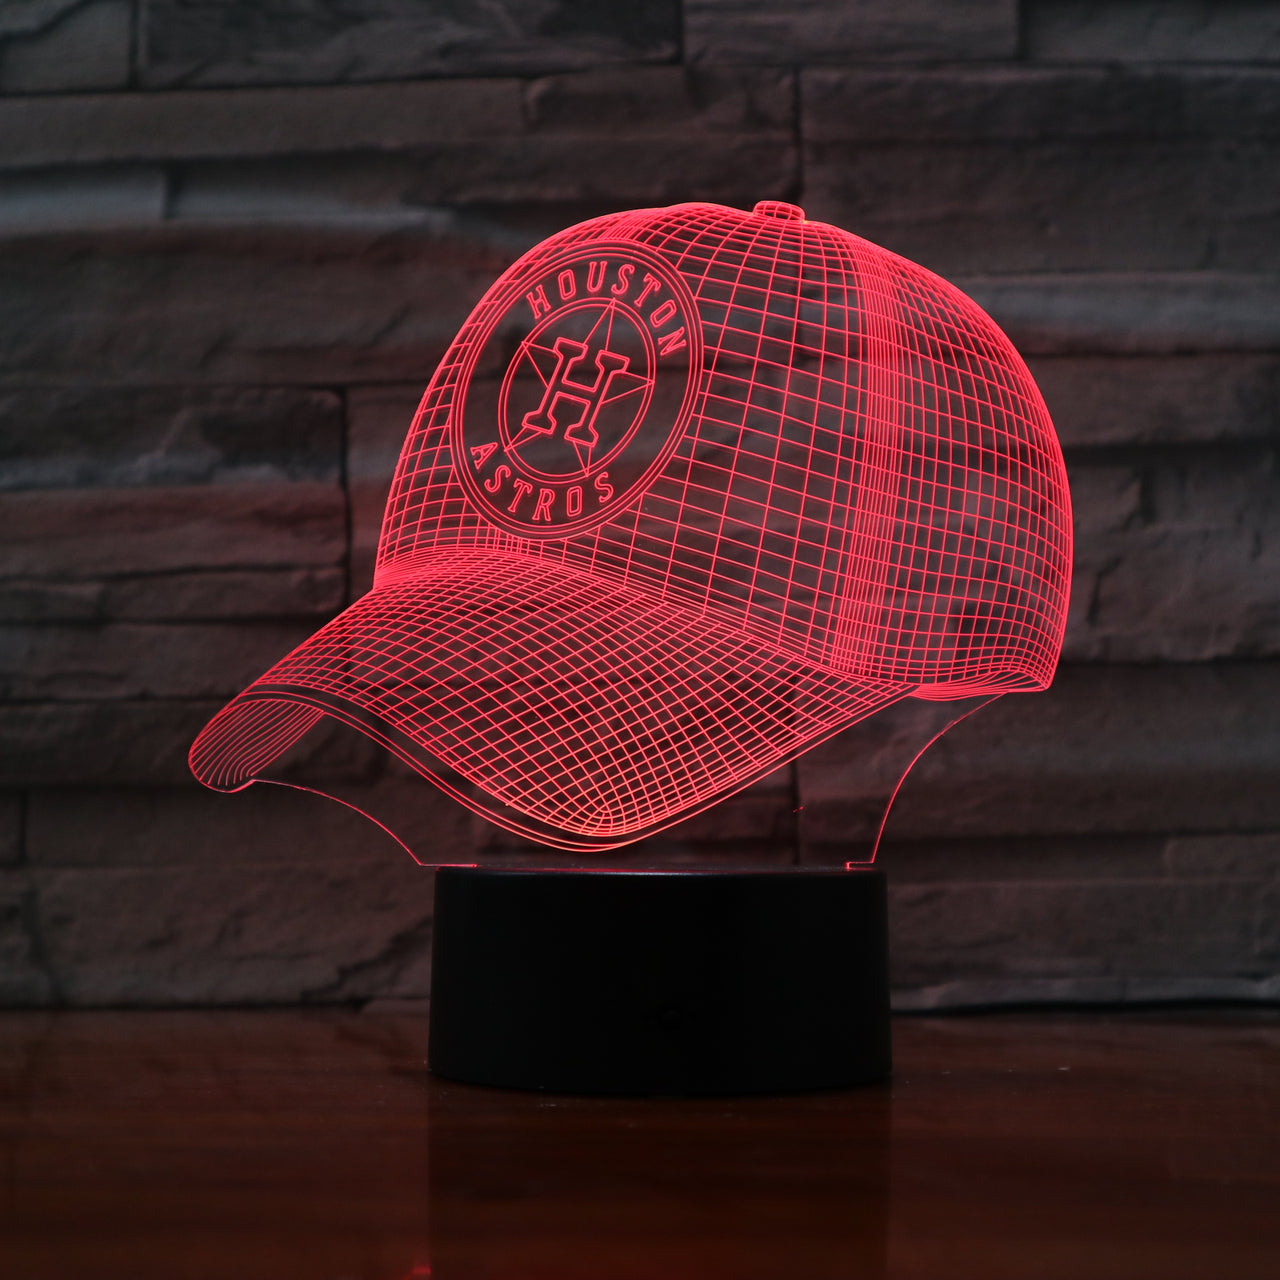 MLB HOUSTON ASTROS 3D LED LIGHT LAMP